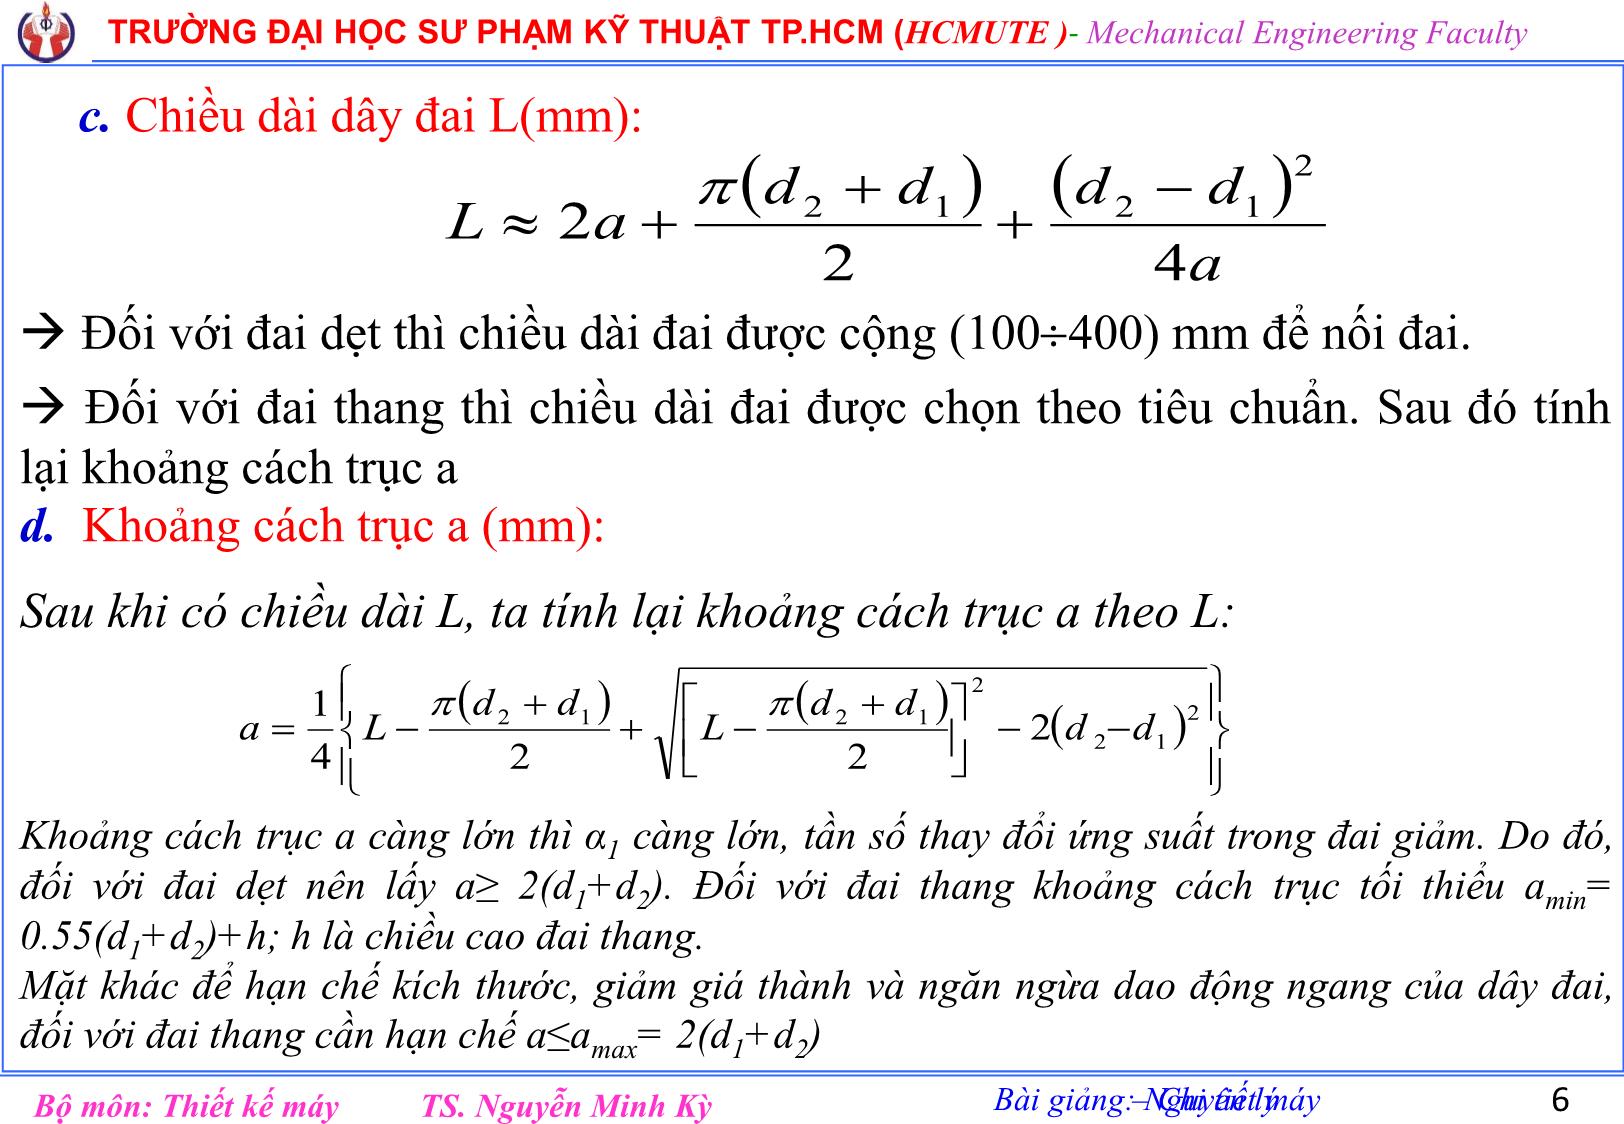 Bài giảng Nguyên lý chi tiết máy - Chương 5: Truyền động đai - Nguyễn Minh Kỳ trang 6